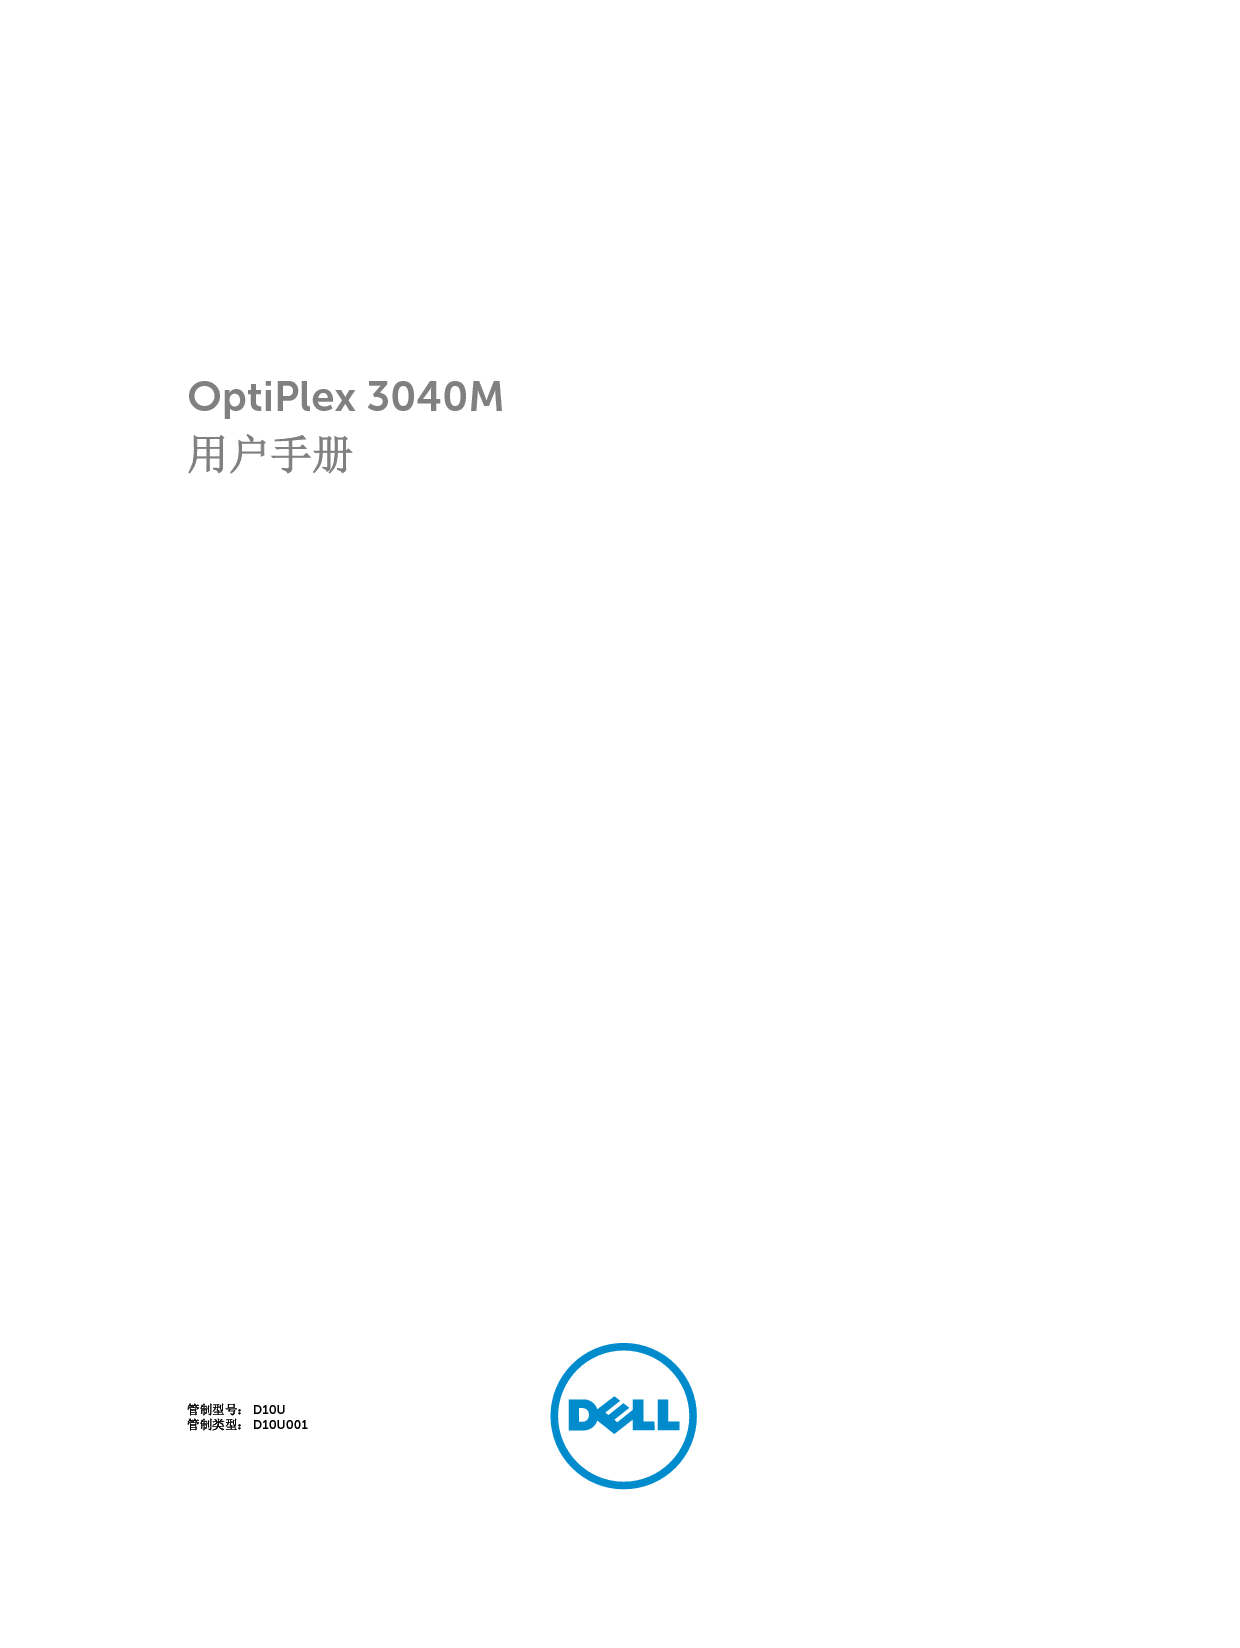 戴尔 Dell Optiplex 3040M 用户手册 封面